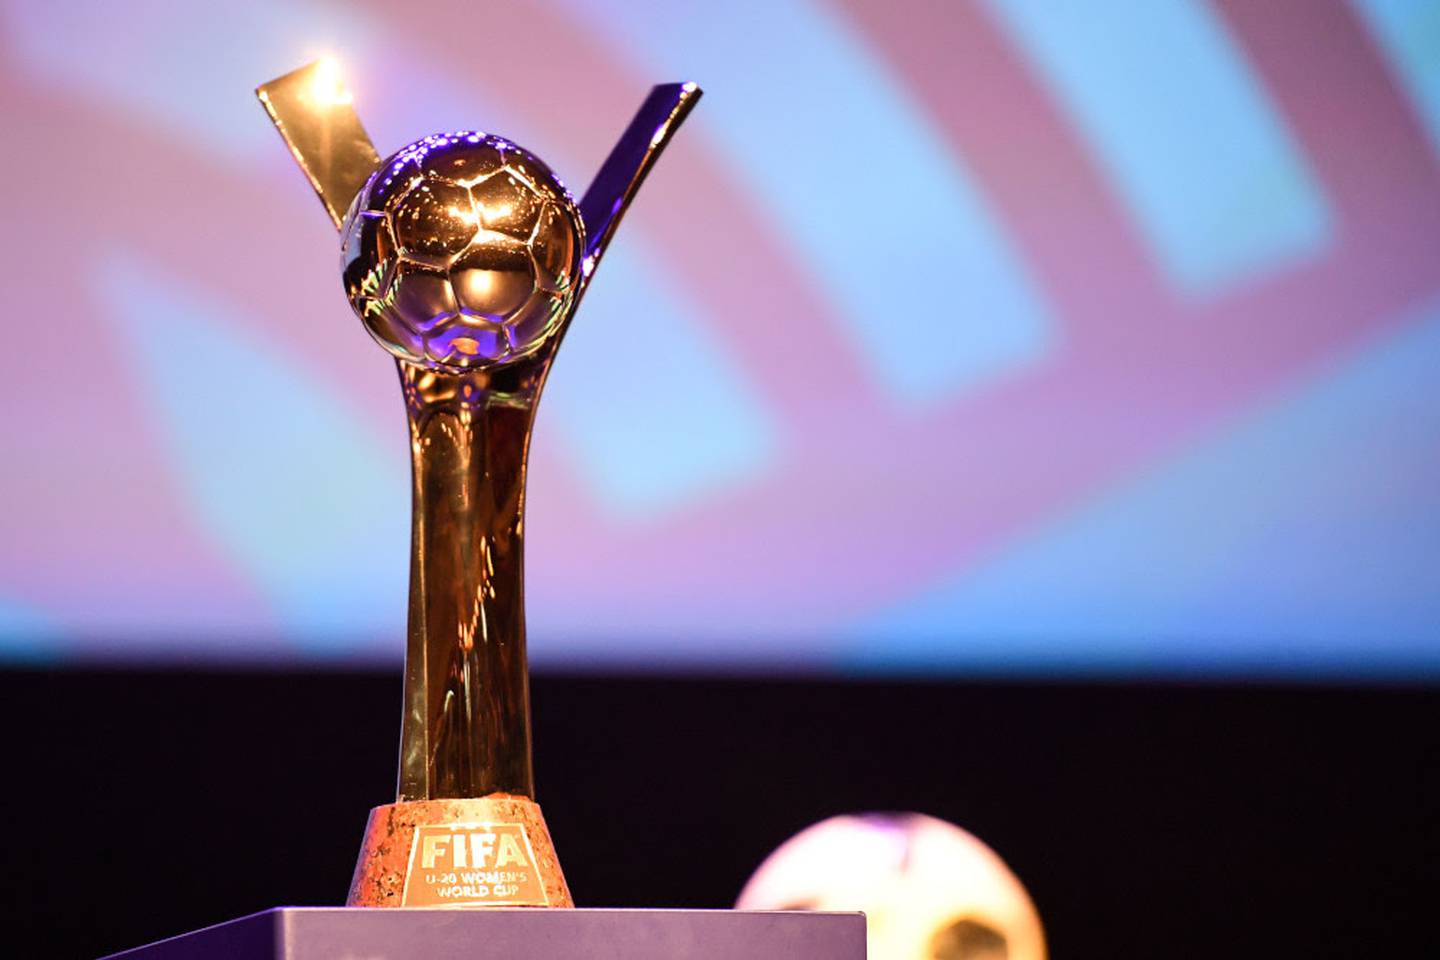 Historia del trofeo del Mundial Femenino: quién diseño la copa